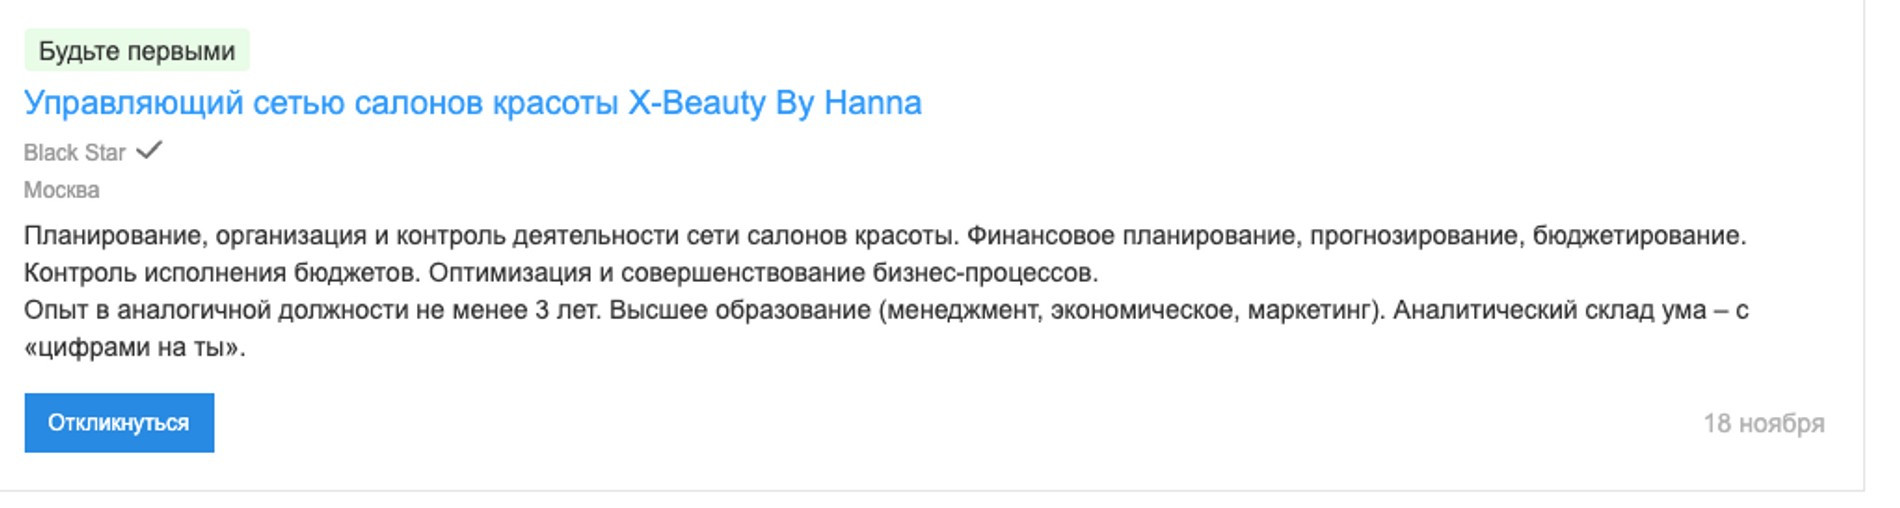 Ханна в поисках нового управляющего. Фото: hh.ru